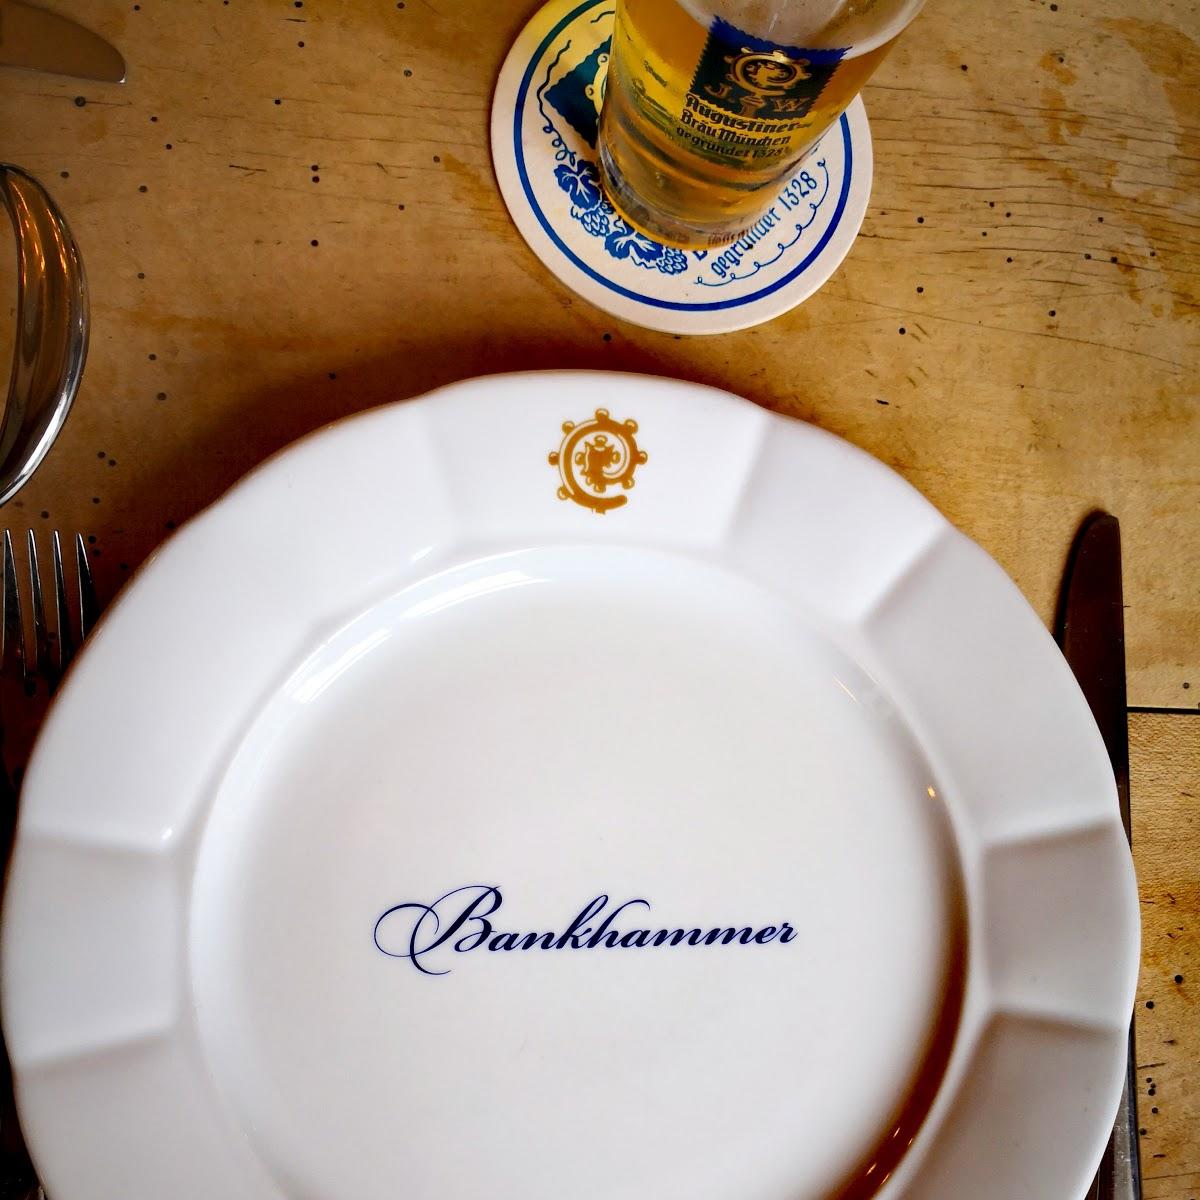 Restaurant "Gasthof Zum Husaren Karl Bankhammer" in Anif